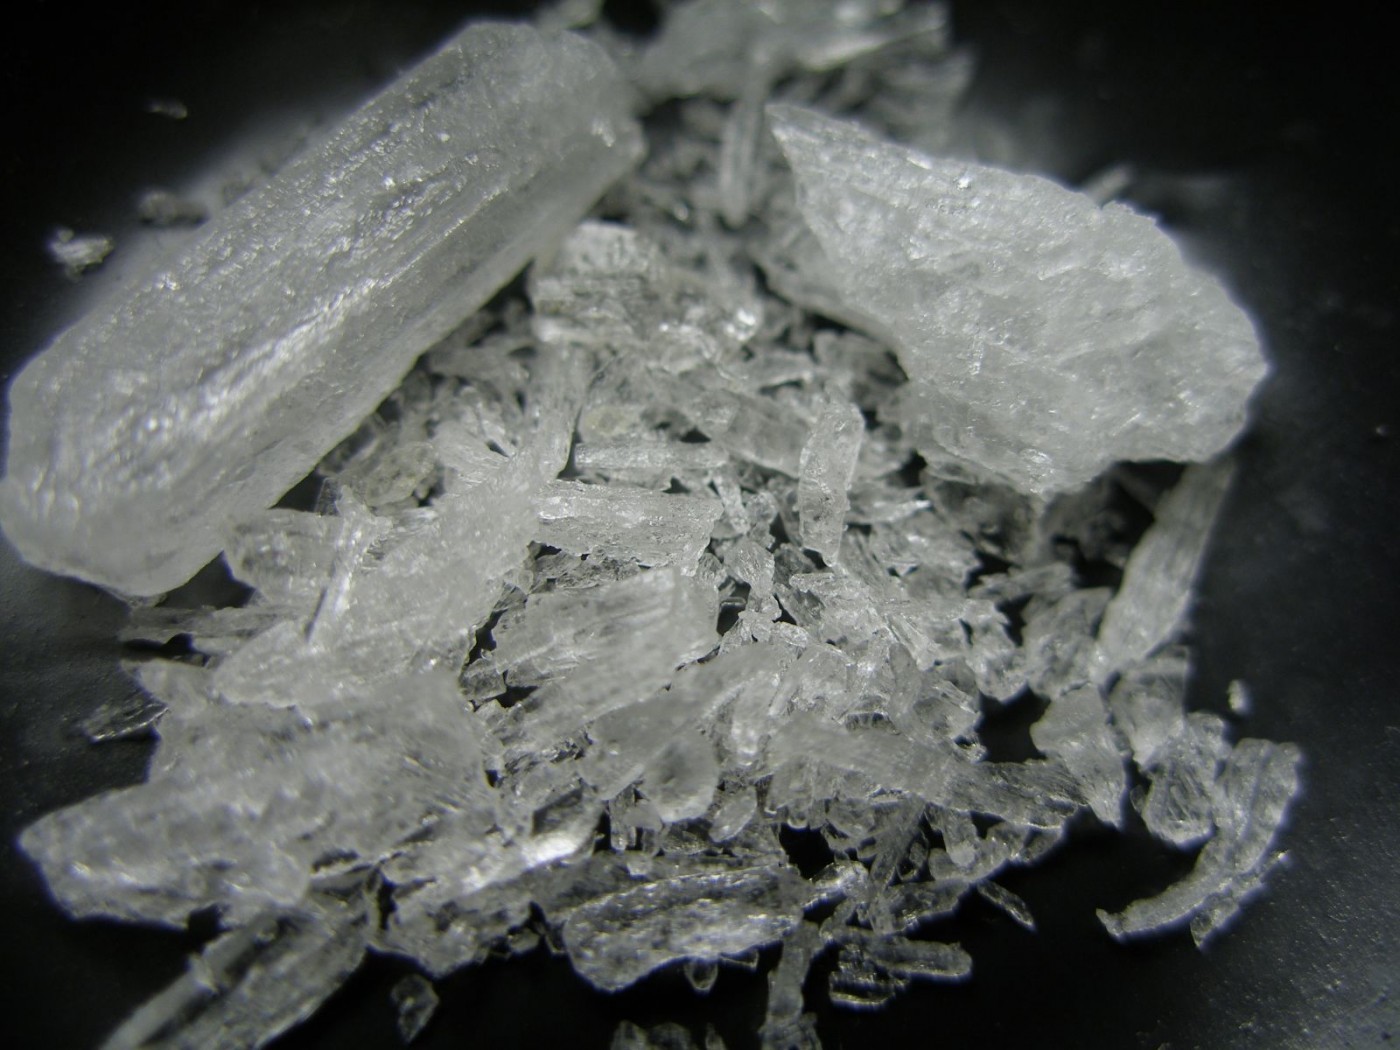 ”Канибал” се нарича новата опасна синтетична дрога, която стига до ученици